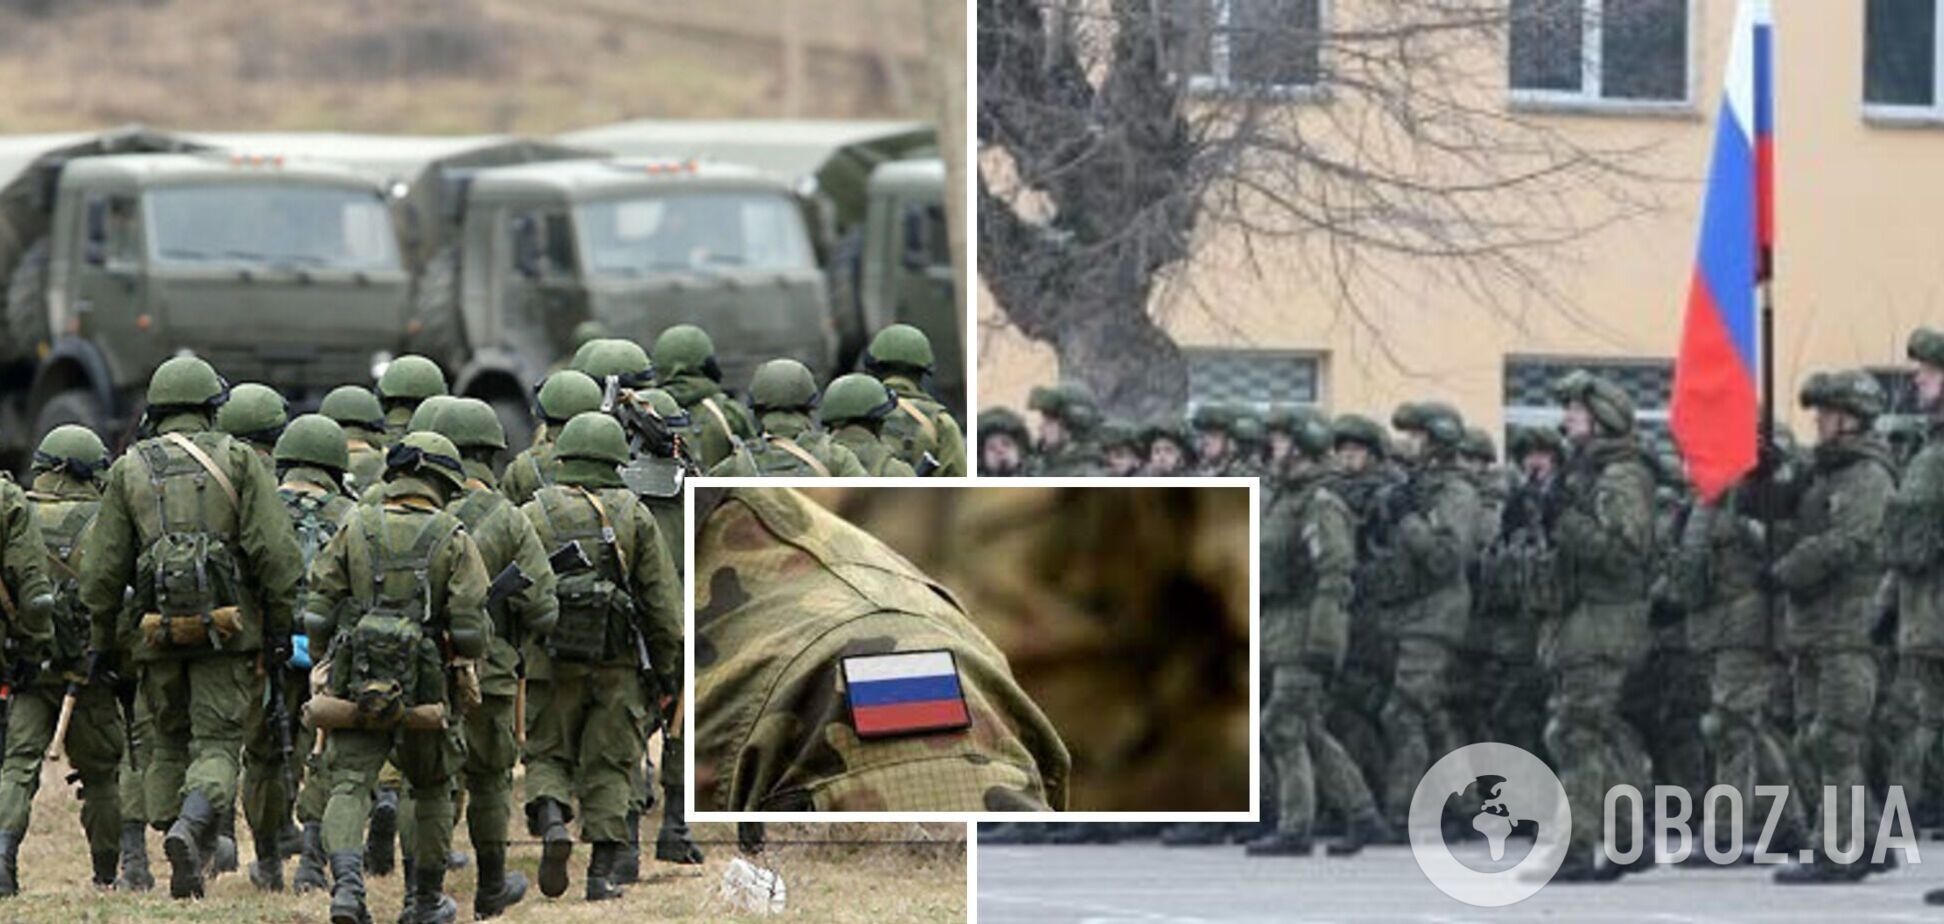 Российских оккупантов на Донбассе в два-три раза больше, чем воинов ВСУ, – Вениславский